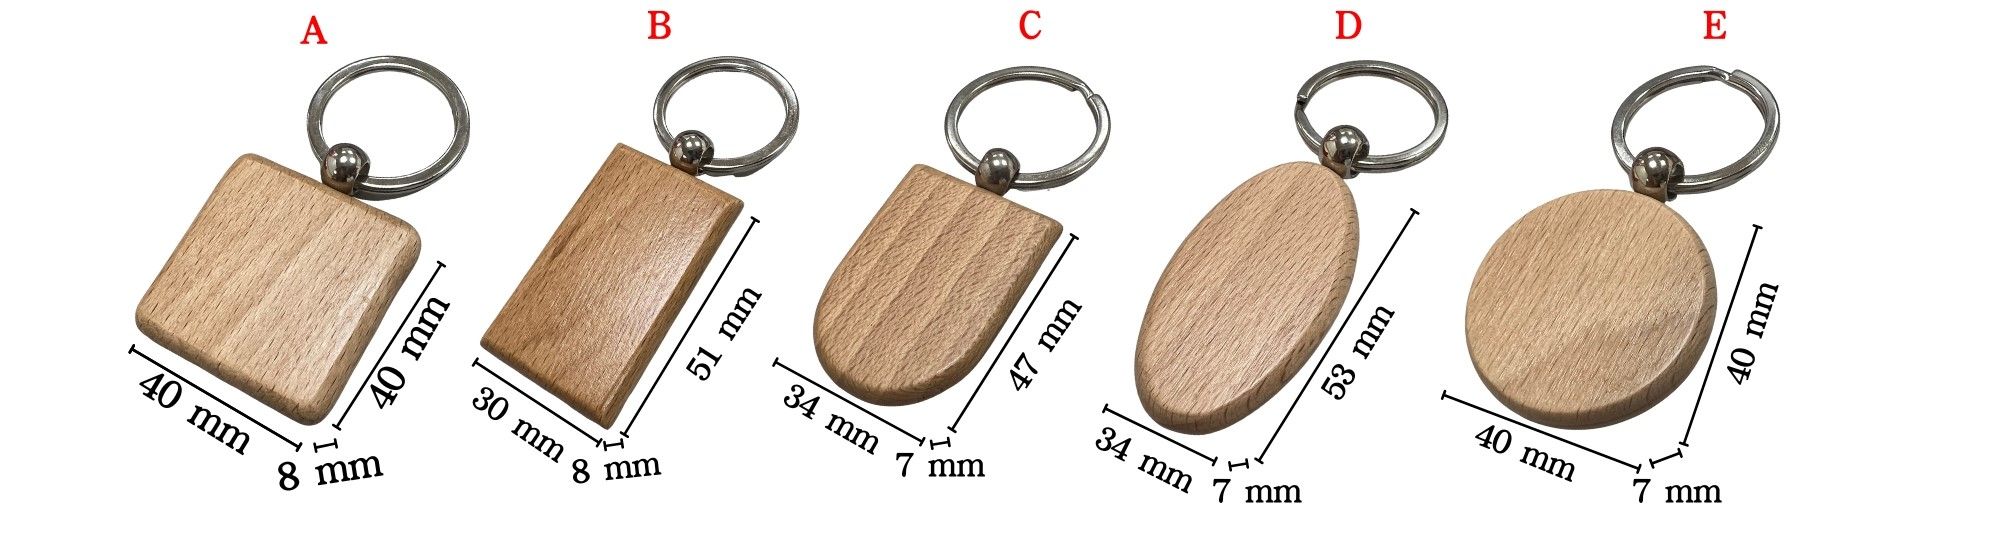 Snelle levering eco houten sleutelhanger.